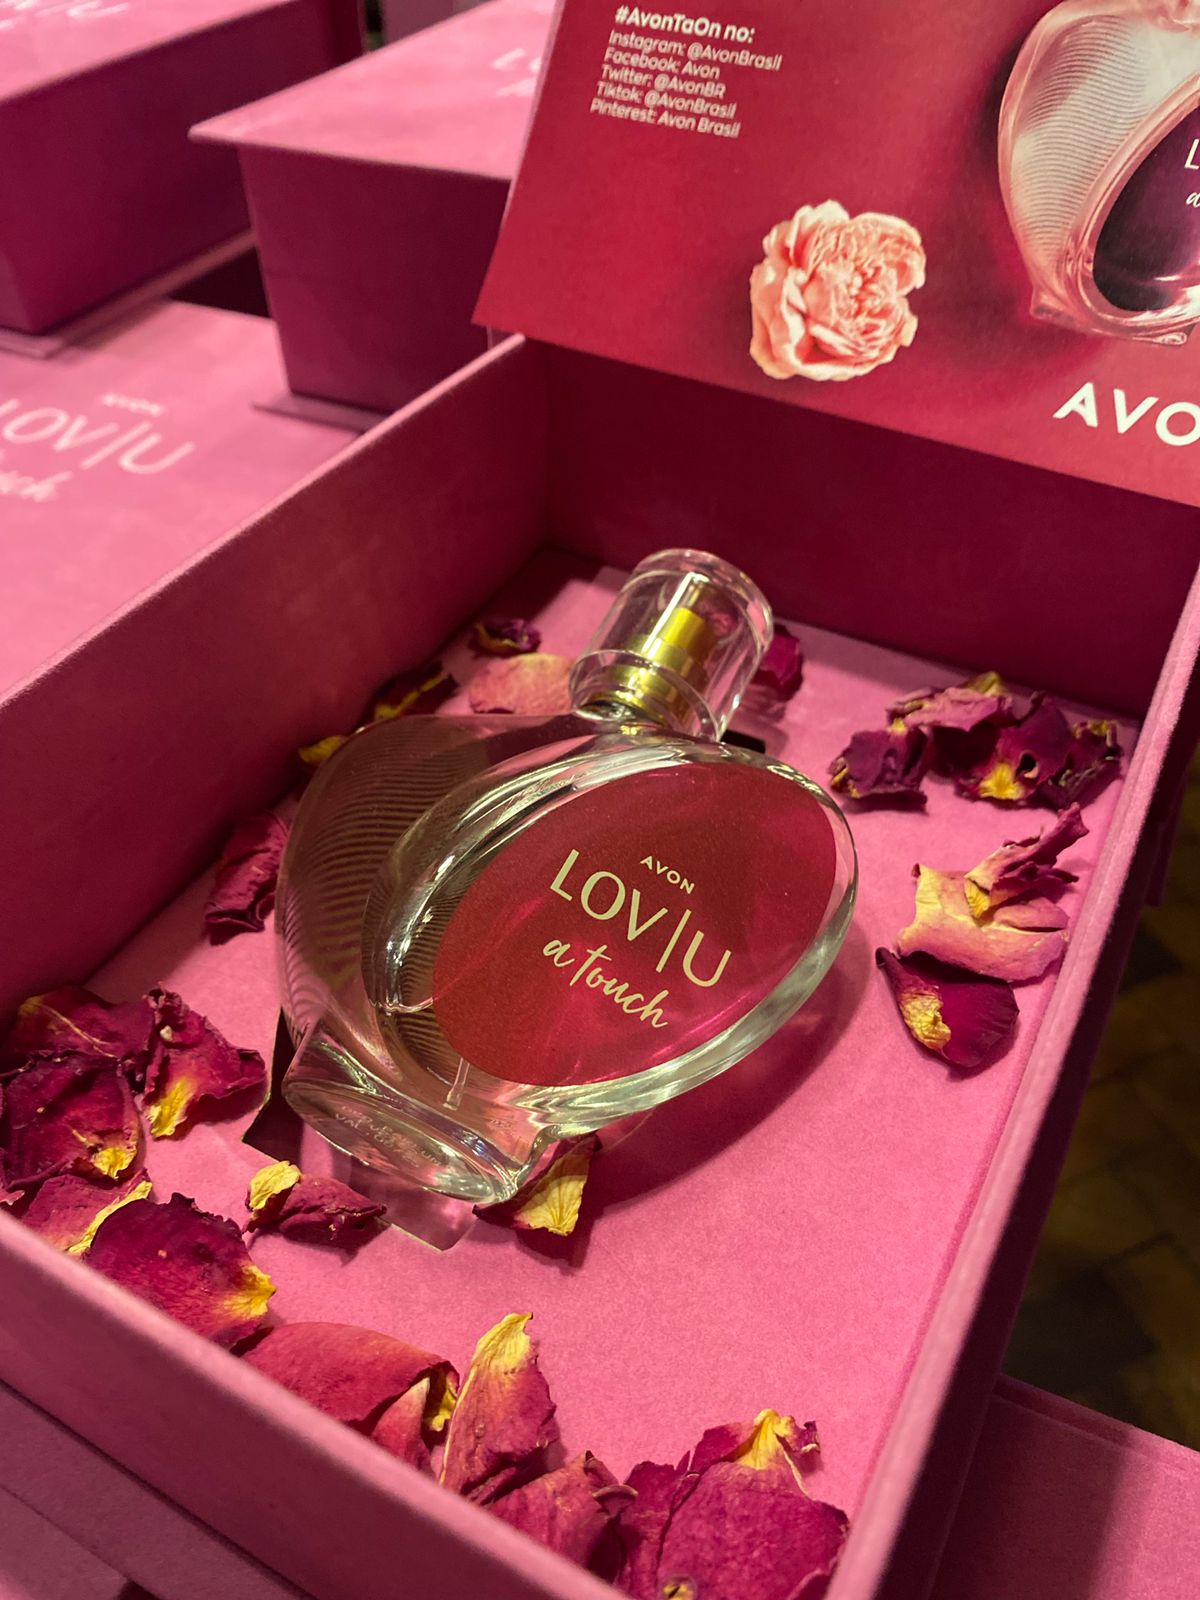 Avon lança nova fragrância com evento exclusivo em Salvador